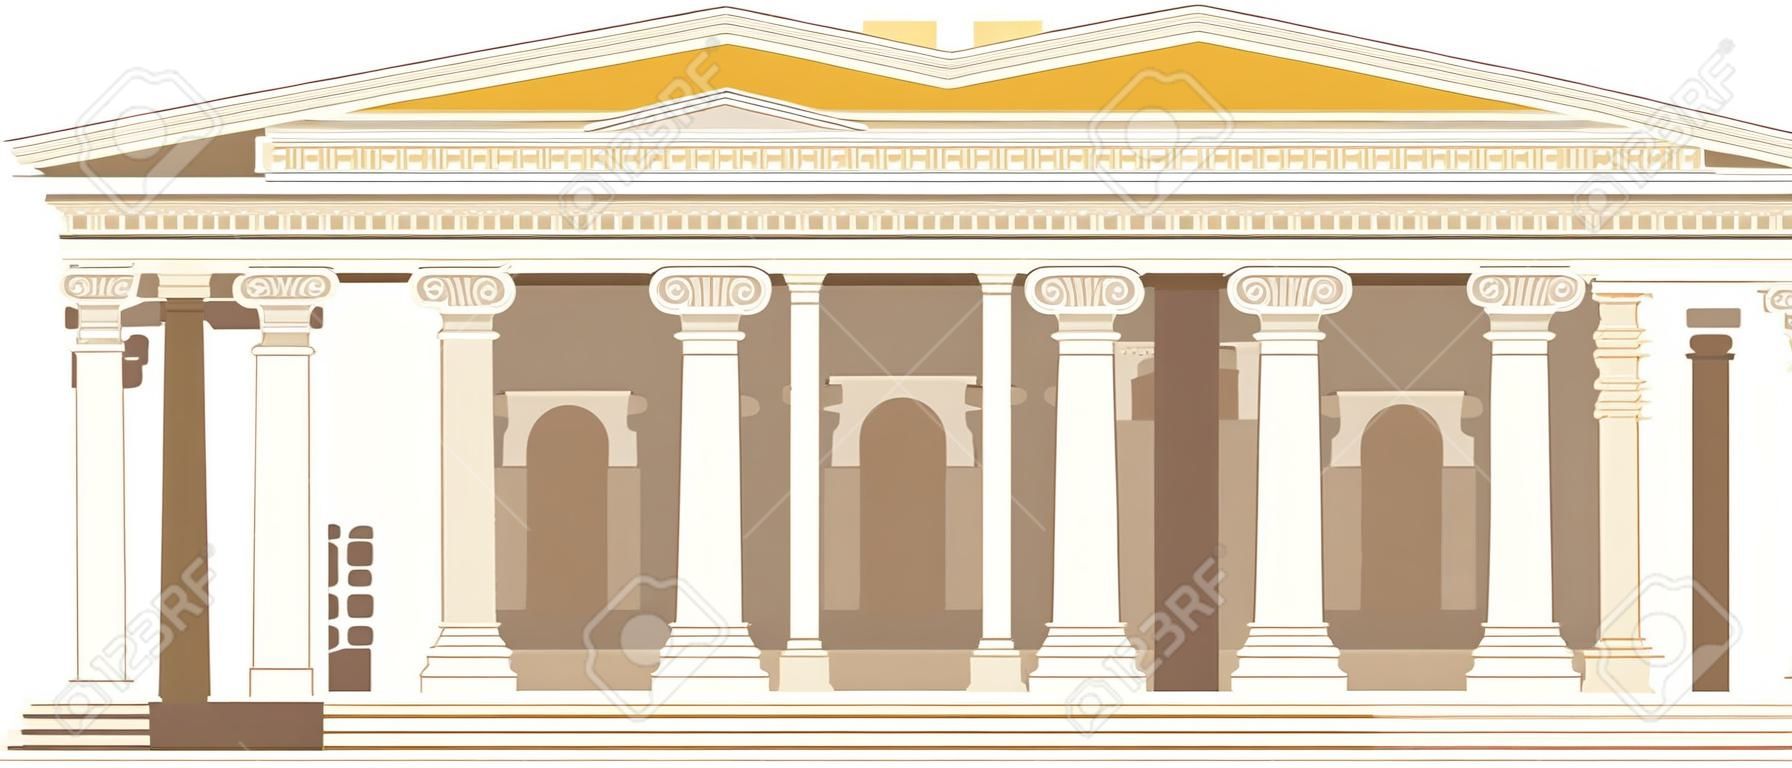 Antica colonna del tempio romano del pantheon che costruisce piastrelle di roma, cultura antica di sviluppo strategico. Punto di riferimento italiano Pantheon, vecchio tempio nella piazza della città. Paesaggio storico tradizionale tempi antichi